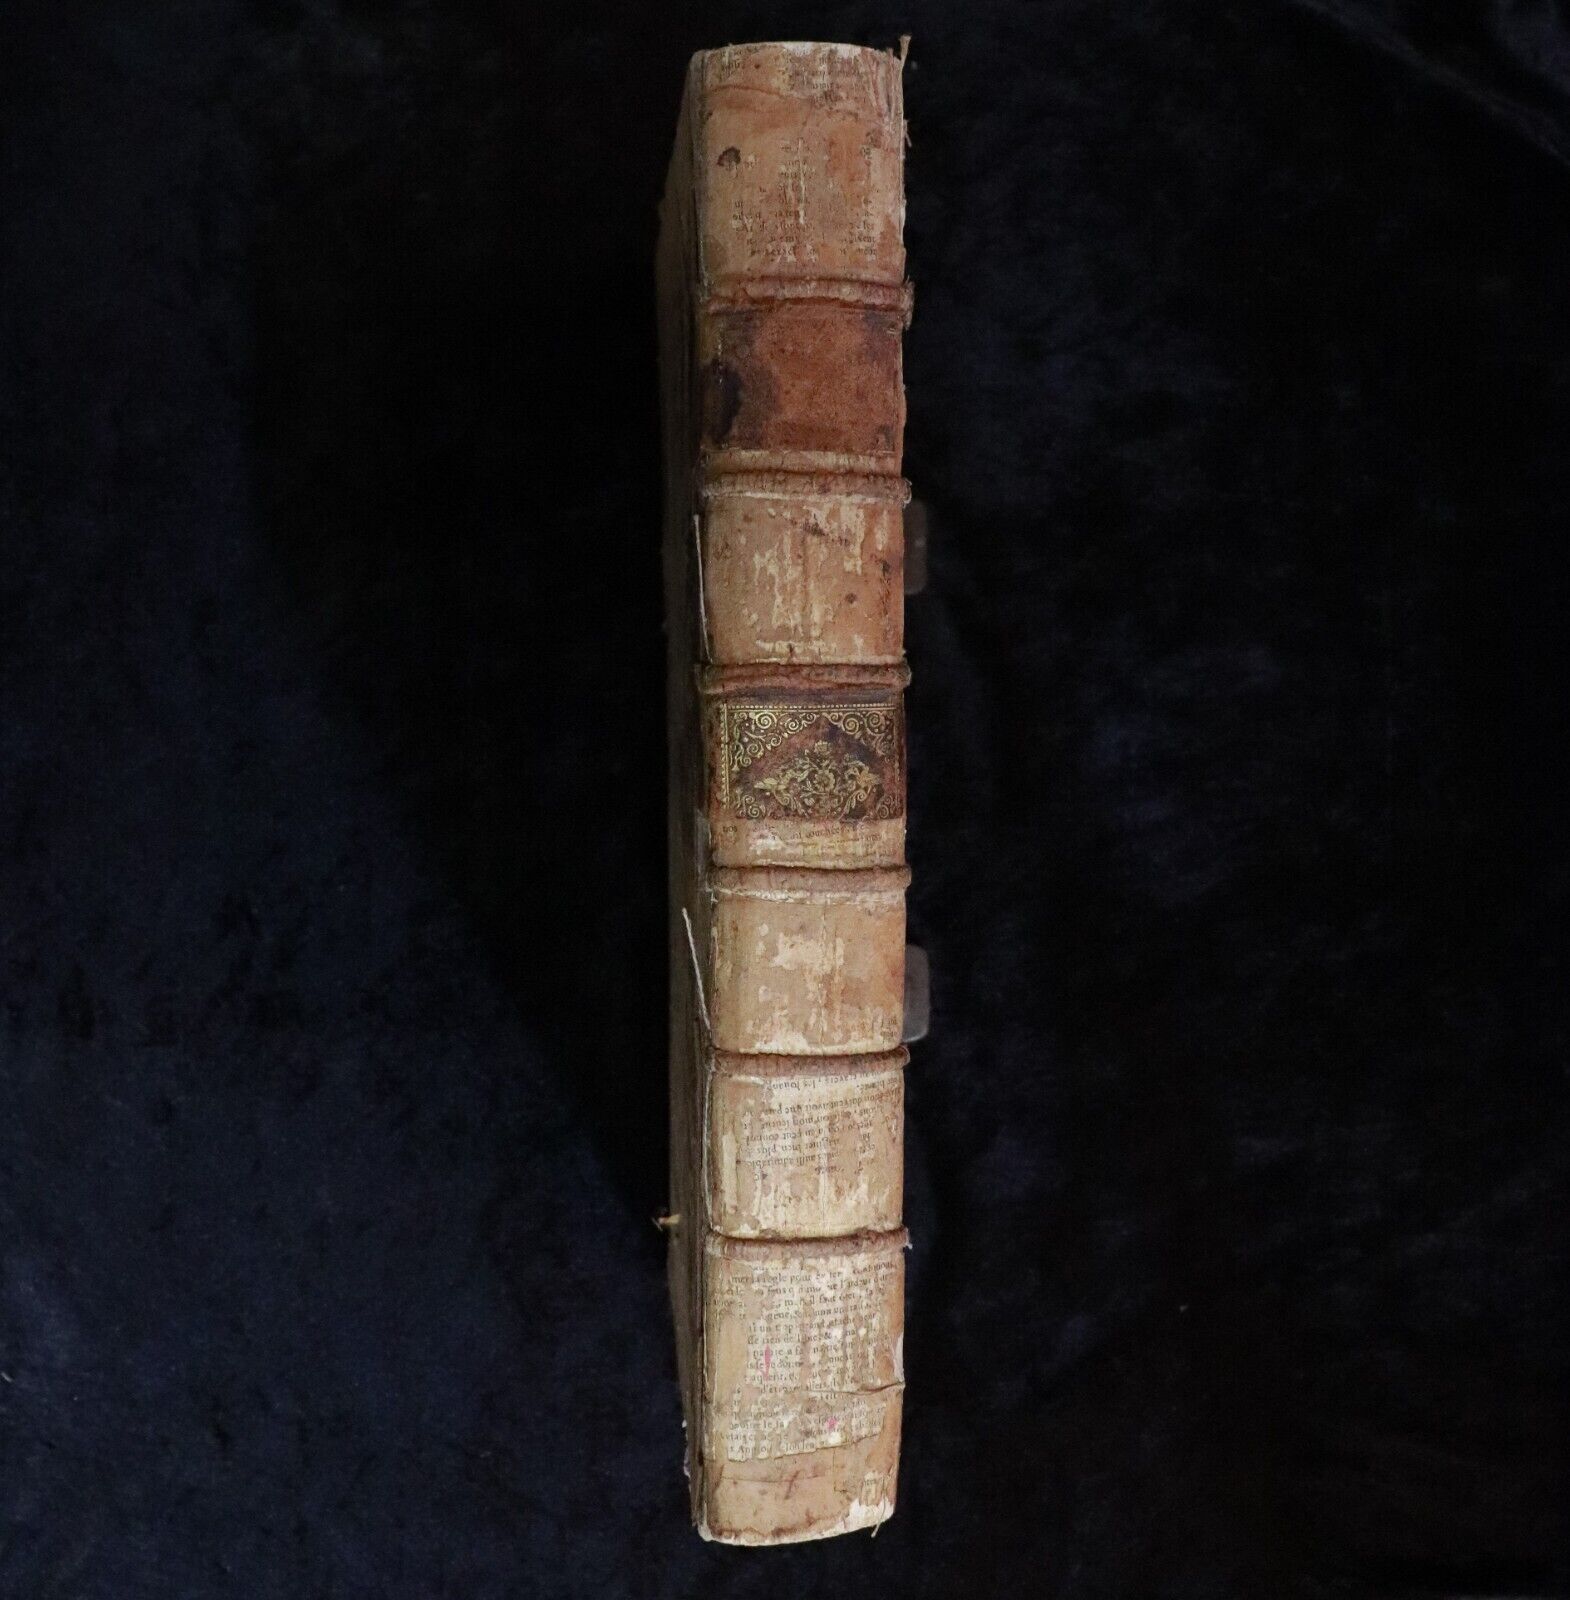 1744 Les Oeuvres De Me Jean Bacquet: Claude De Ferriere French Antiquarian Book